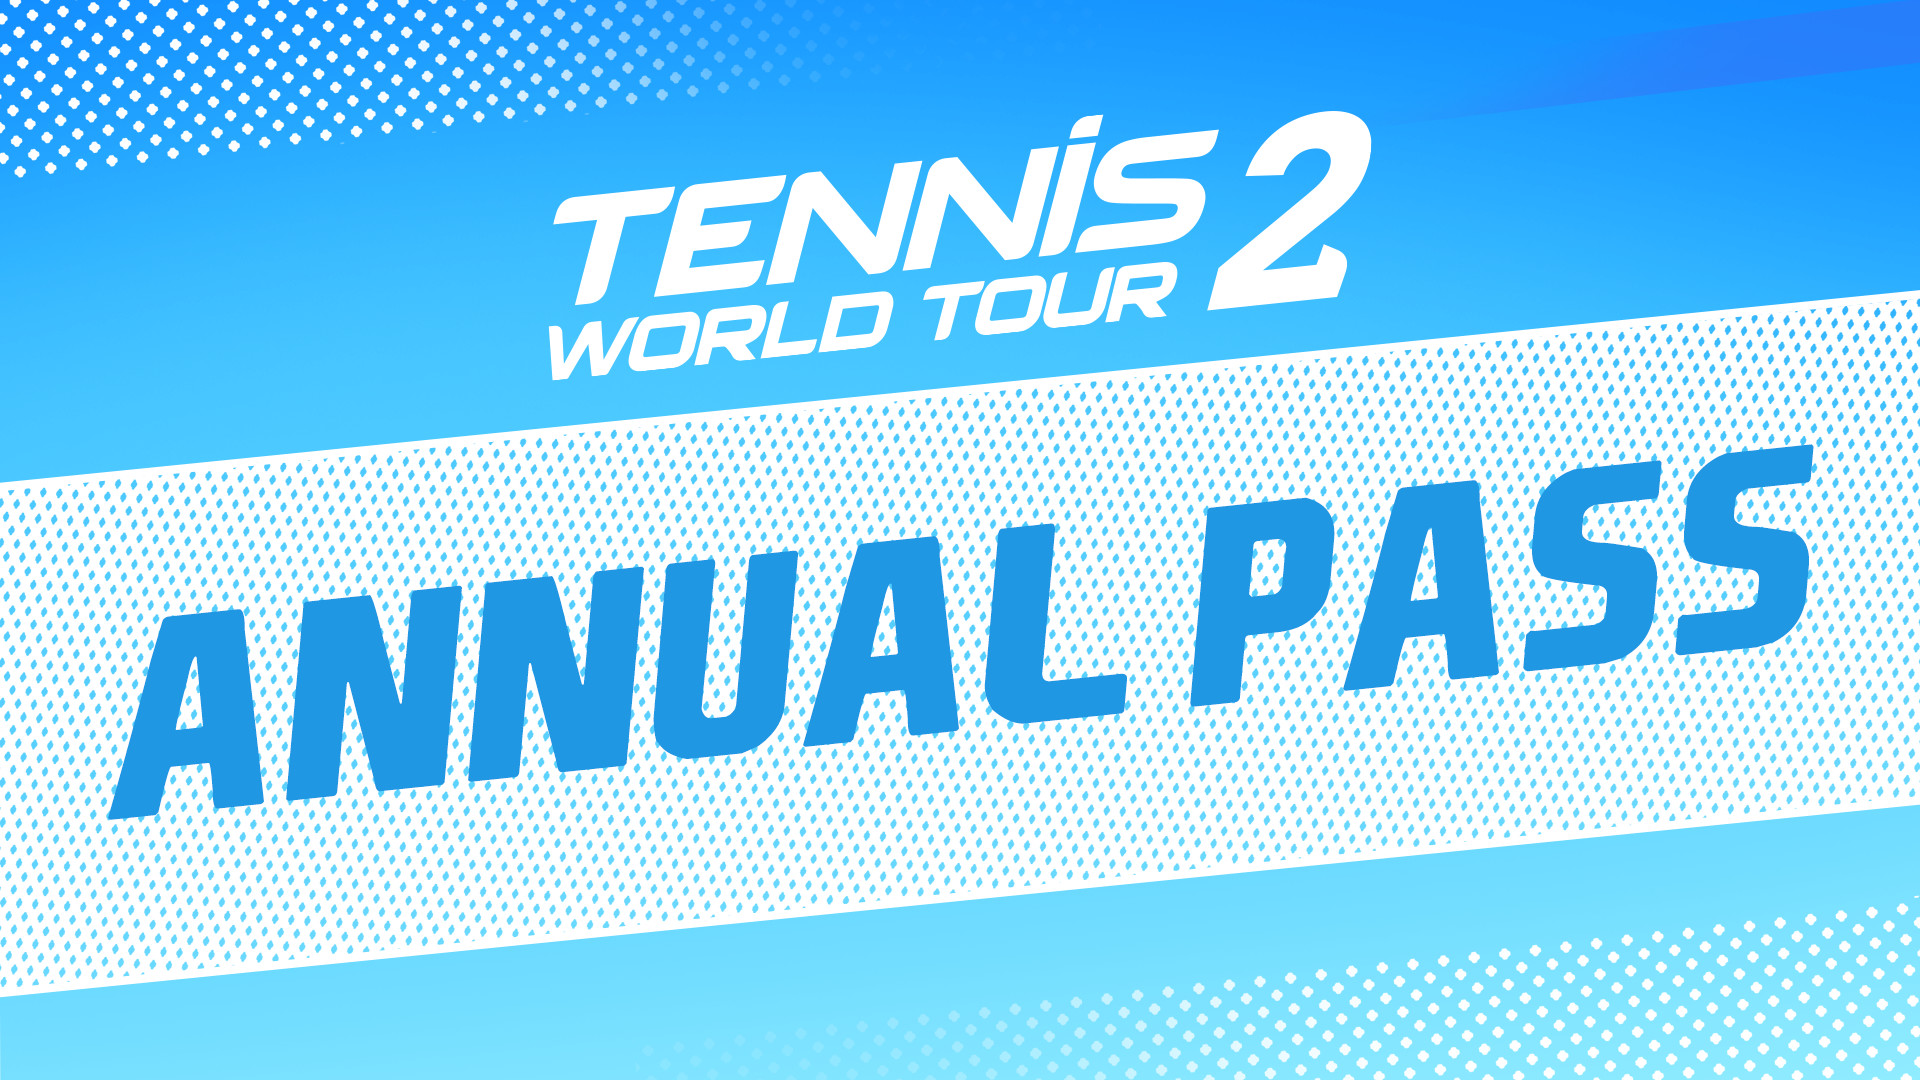 Tennis World Tour 2 - Annual Pass DLC Steam CD Key, 7.23$